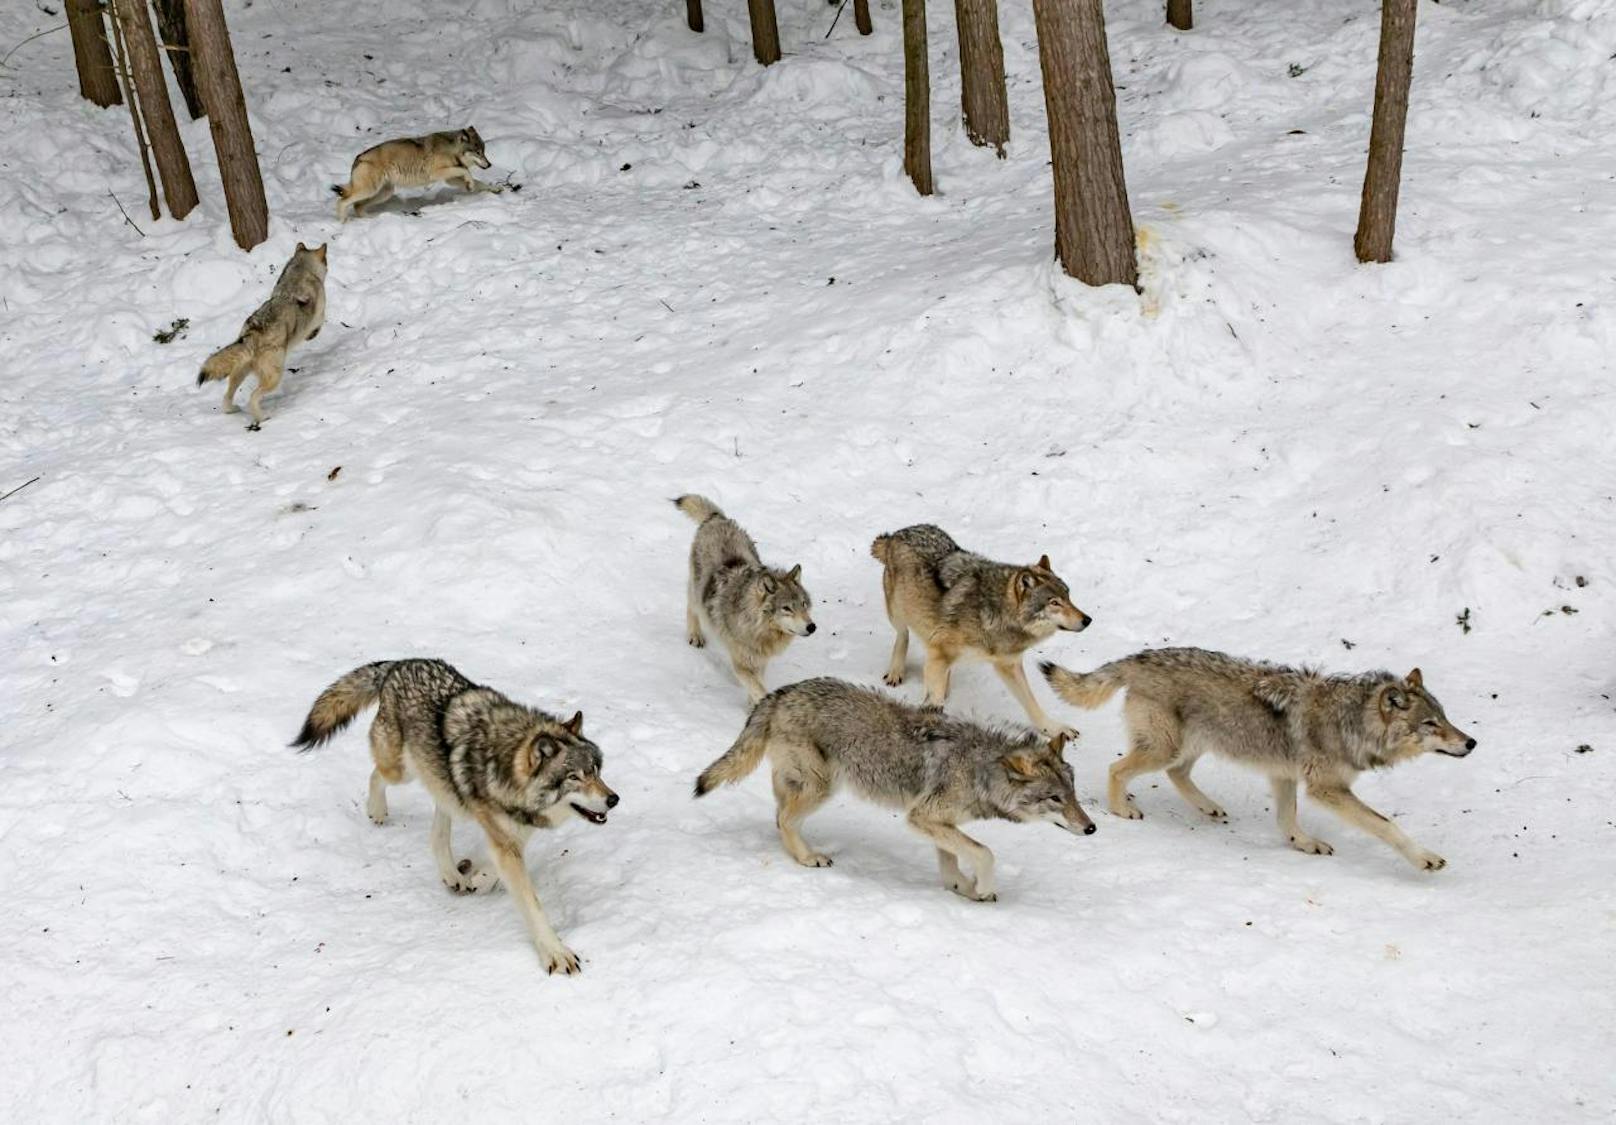 <b>Wolfsfakt 2: Nach der Bildung von Rudeln steigen die Wolfsdichten nicht weiter an.</b>
Wölfe bekämpfen rudelfremde Wölfe und regulieren sich so selber sehr effizient. Hat sich erstmal ein Rudel gebildet, verteidigt es sein Revier vor anderen Wölfen. Die Wolfsdichten bleiben daher gering, weil ein Rudel (4-6 Tiere) etwa 250 Quadratkilometer beansprucht. (Circa 35 Fußballfelder).
<b>Bejagung kann zur verstärkten Vermehrung führen und den Druck auf Weidetiere sogar erhöhen. </b>Wolfsfreie Zonen sind weder gesetzlich möglich, noch biologisch sinnvoll oder praktikabel.